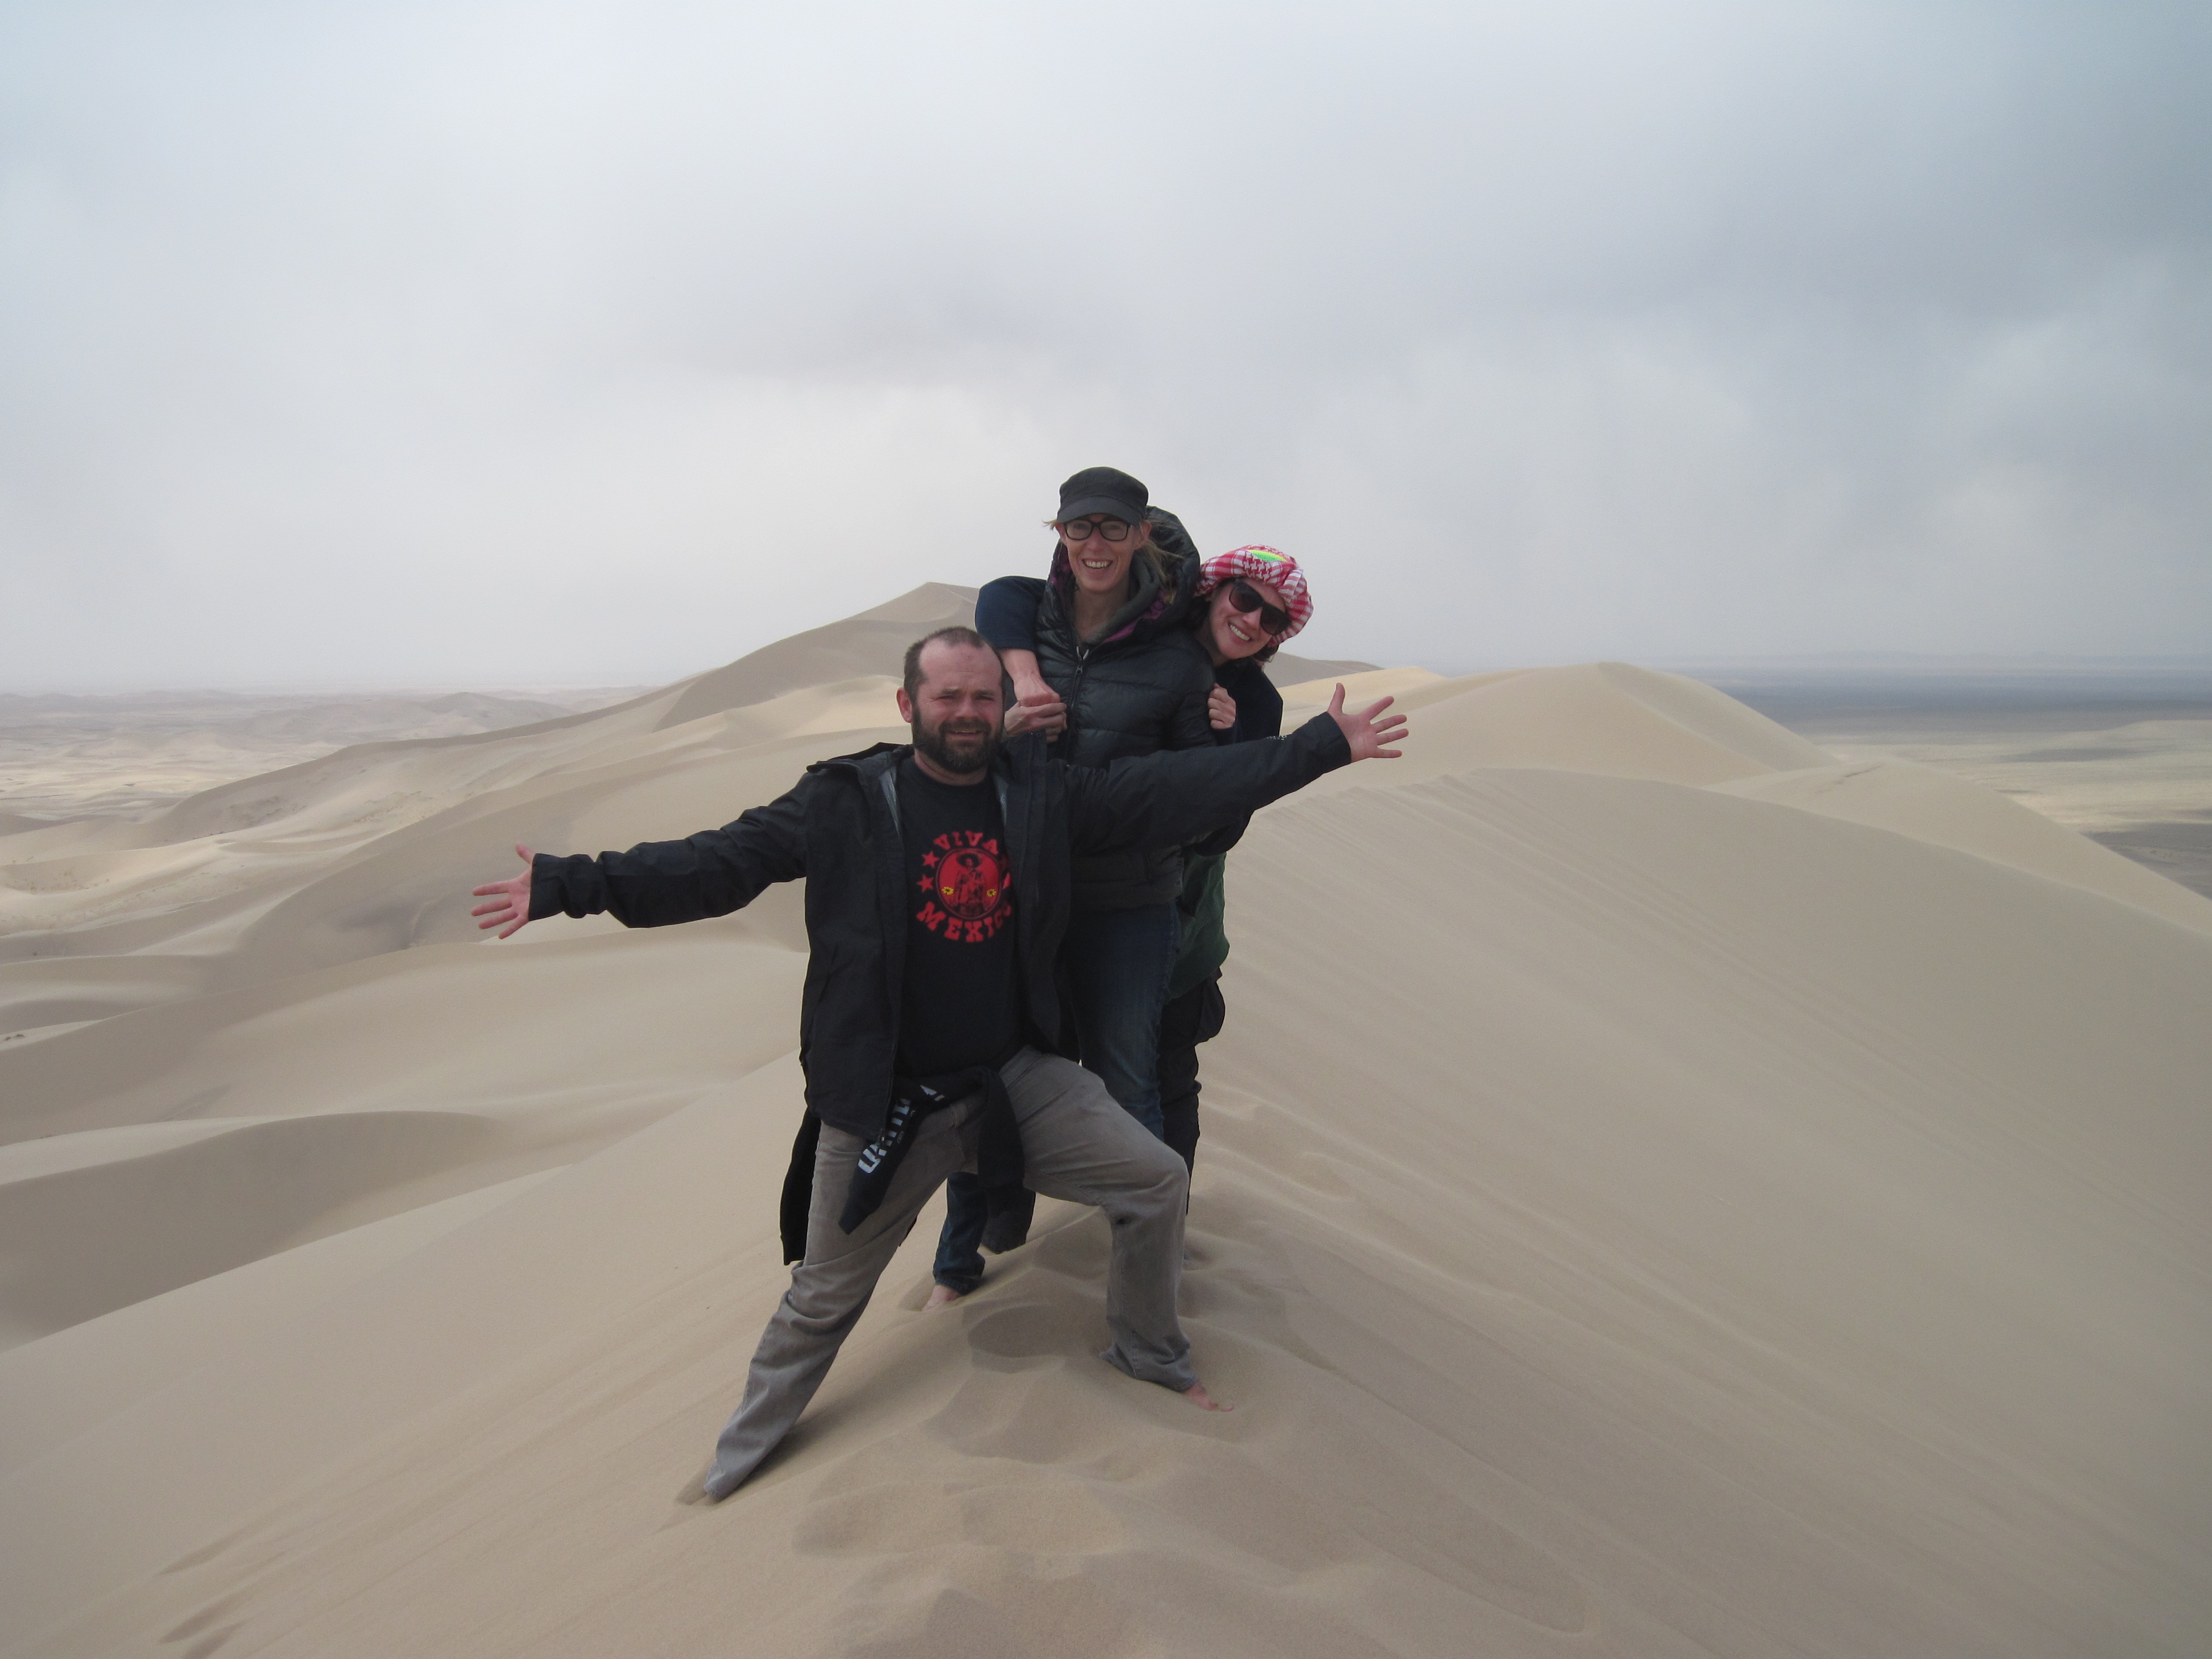 The Gobi Desert Induced Digital Detoxification